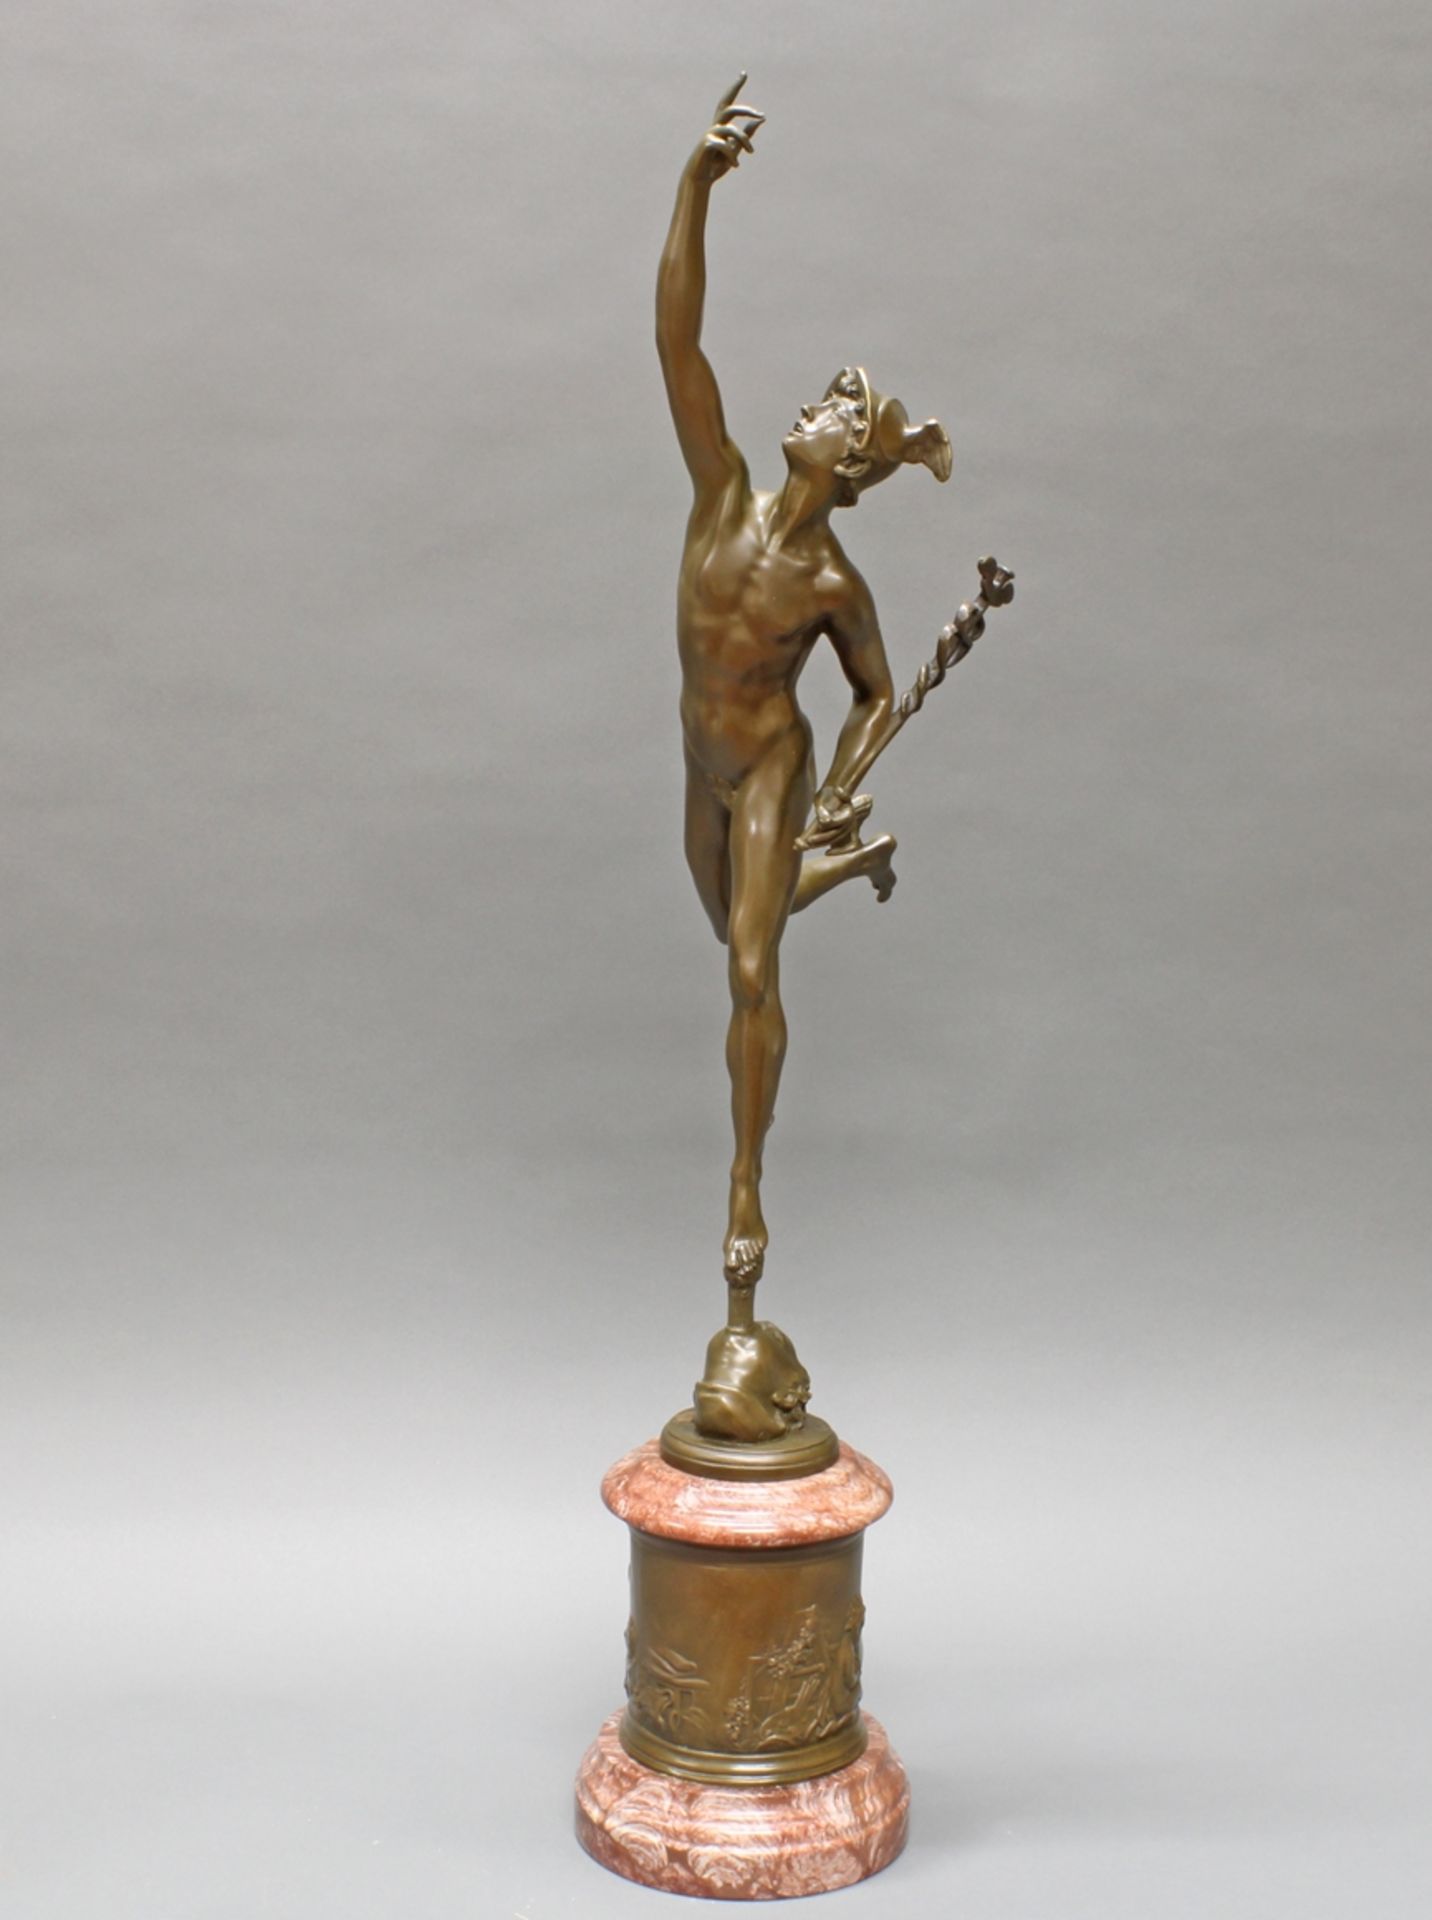 Bronze, dunkelbraun patiniert, "Merkur", neuzeitlicher Guss, nach Giambologna, auf Steinsockel, Ges